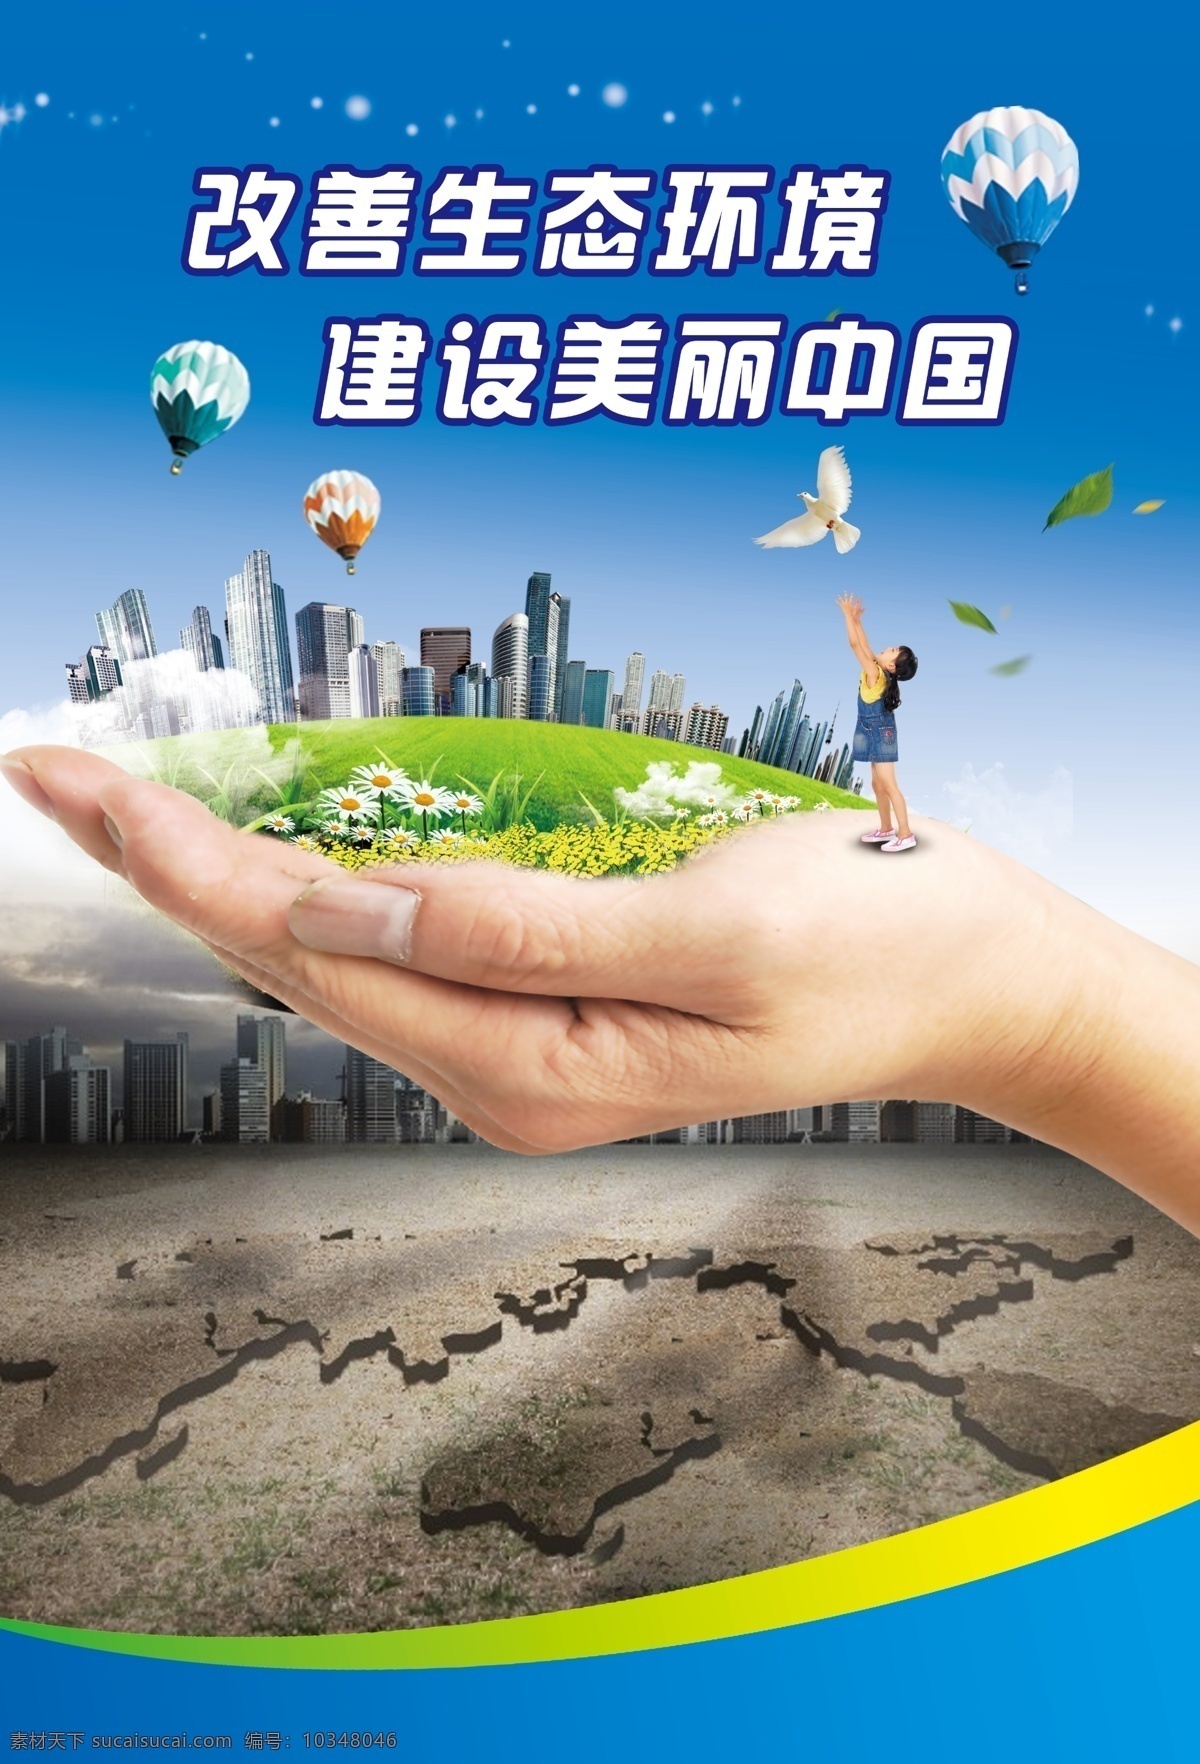 改善生态环境 建设美丽中国 环保 改善环境 环保海报